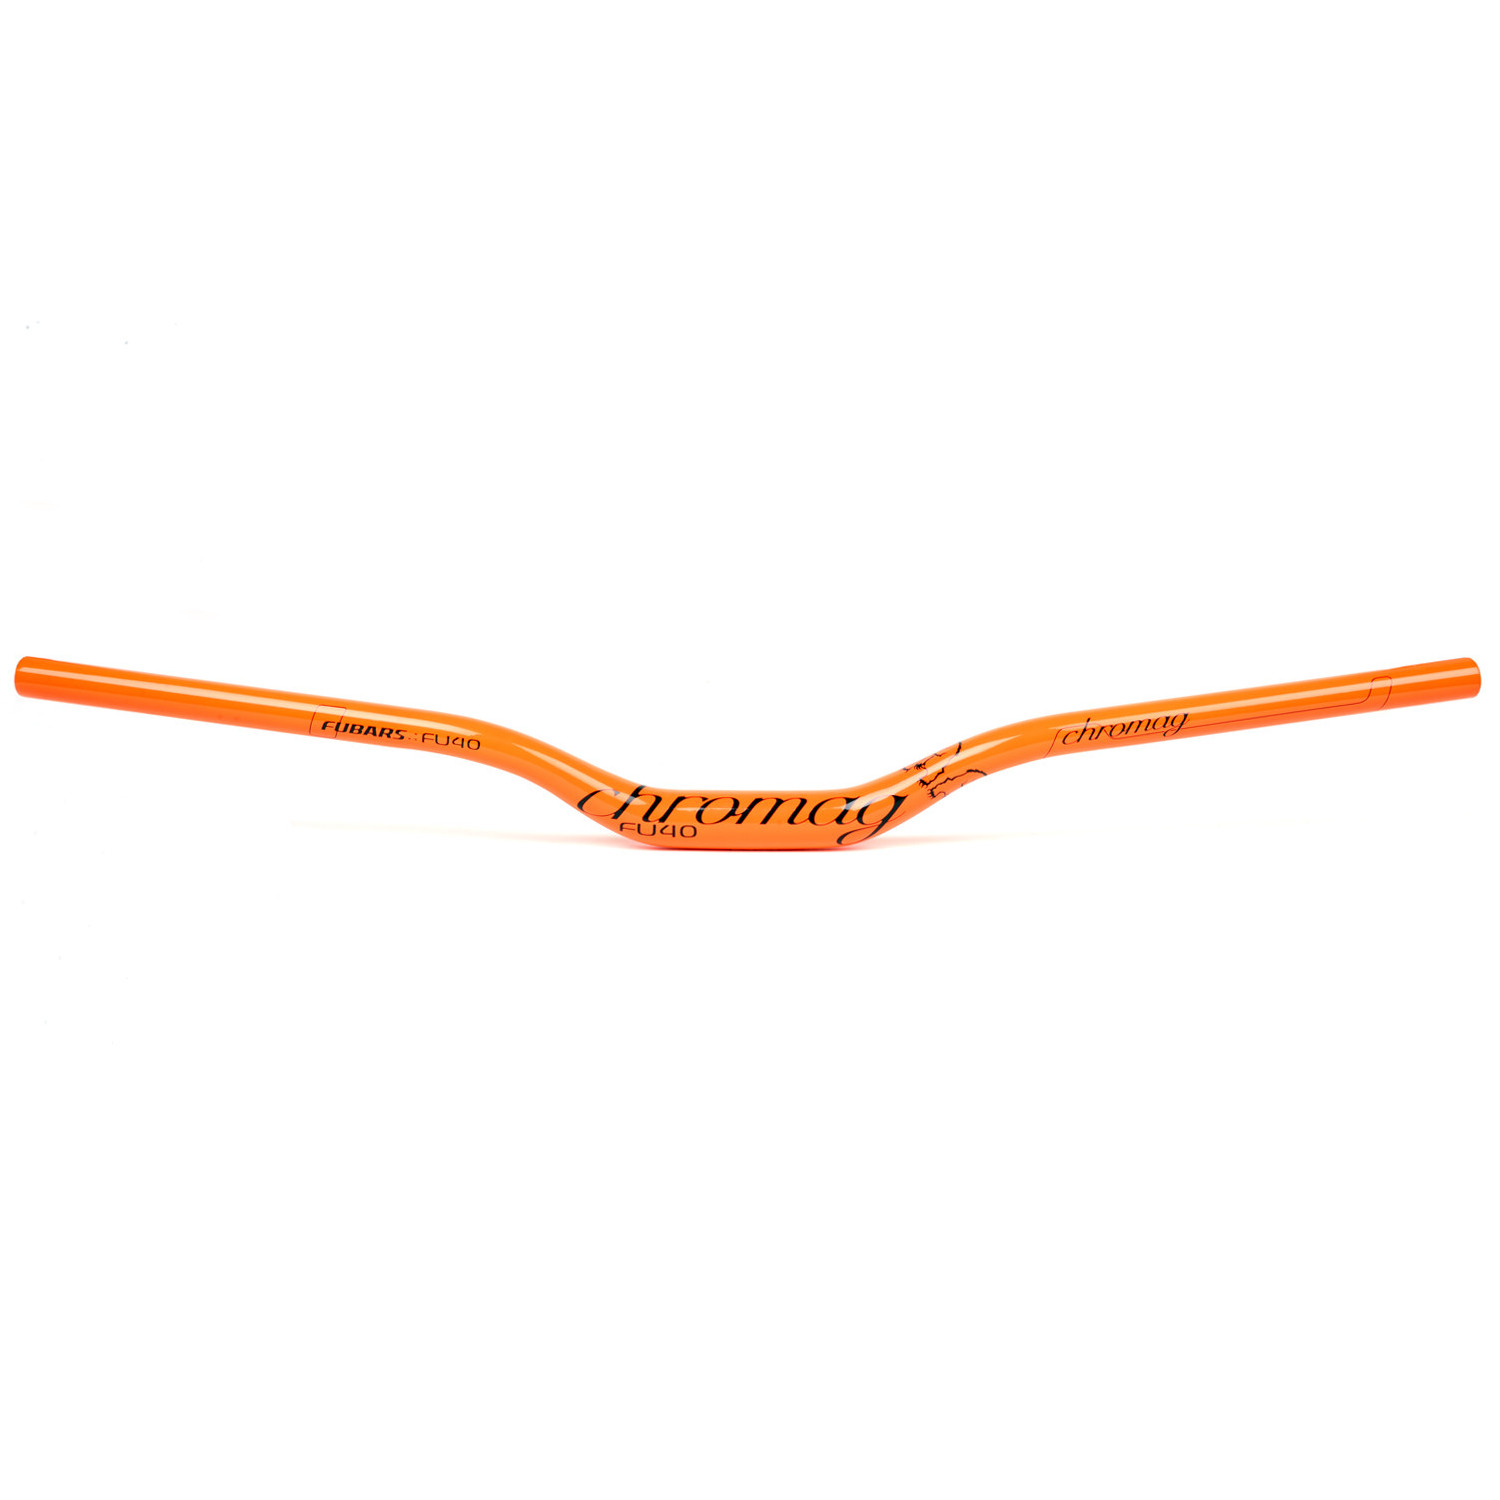 Chromag MTB-Lenker Fubars FU40 31.8 x 780 mm, 40 mm Rise, Neon Orange